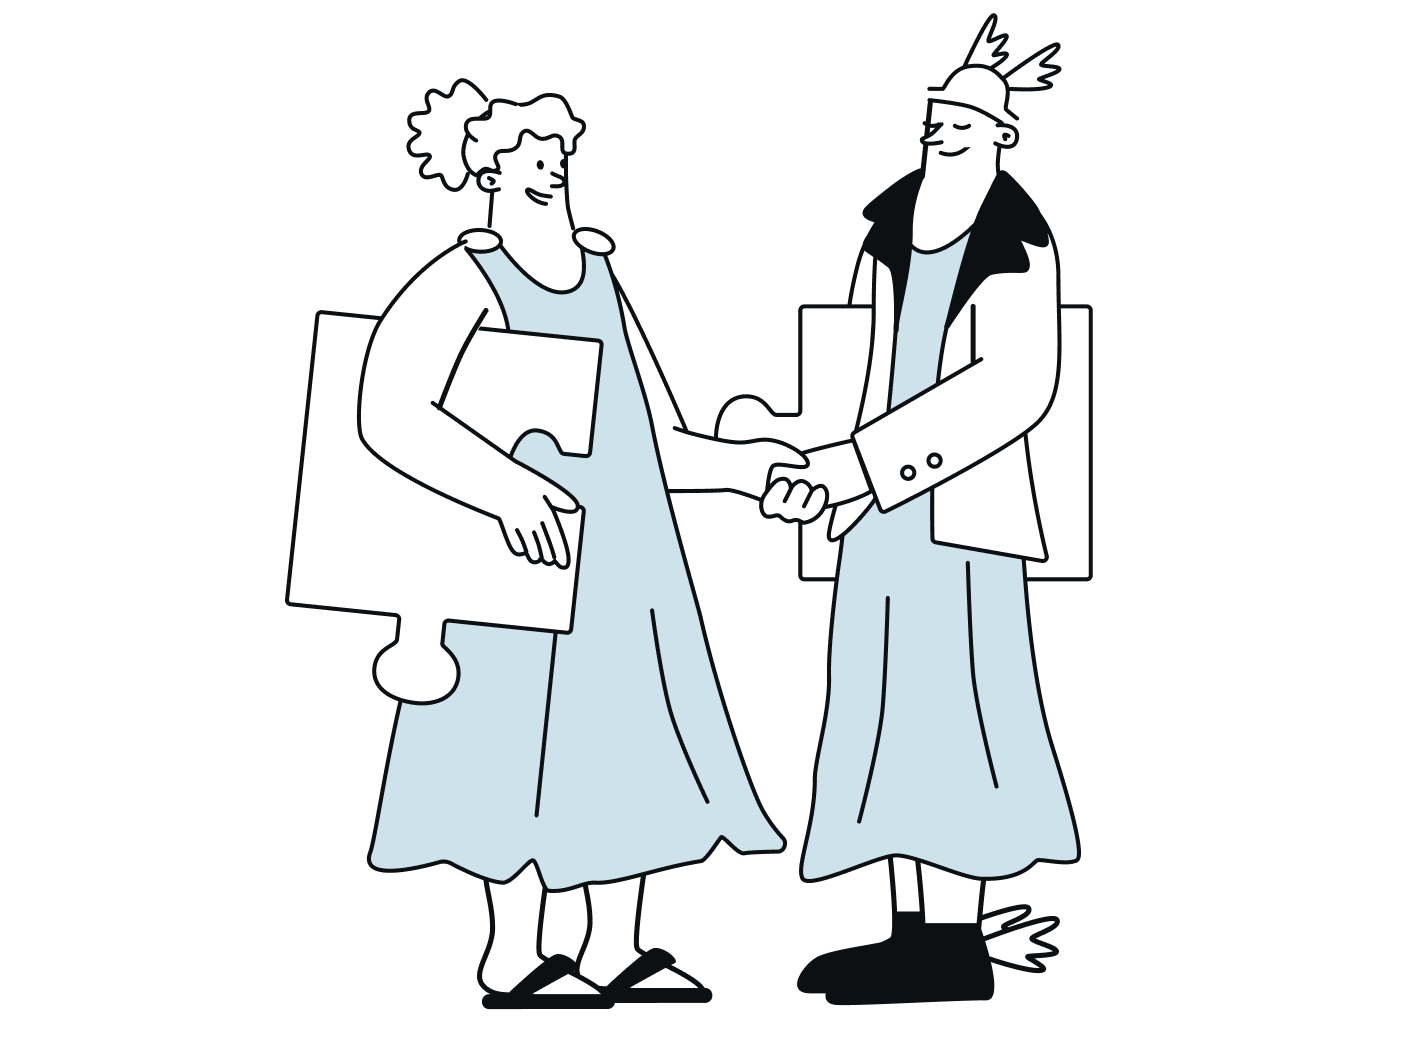 Artémis et Hermès échangent une poignée de main en tenant de grandes pièces de puzzle.